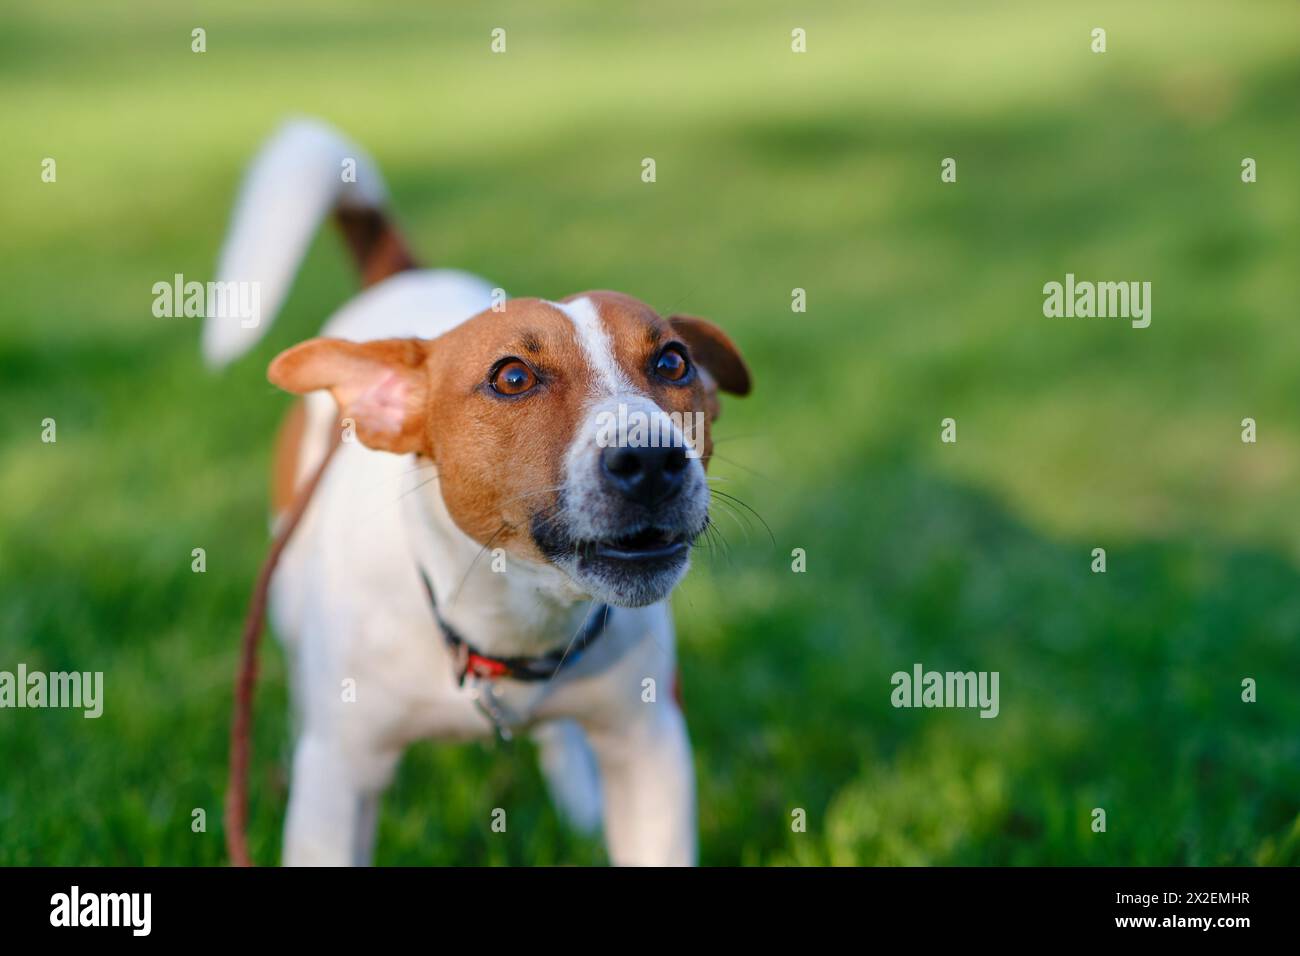 Primo piano ritratto di un simpatico cane felice Jack russell terrier che gioca in un parco all'aperto su prato verde, concentrato, teso durante l'allenamento o il gioco. Conce Foto Stock